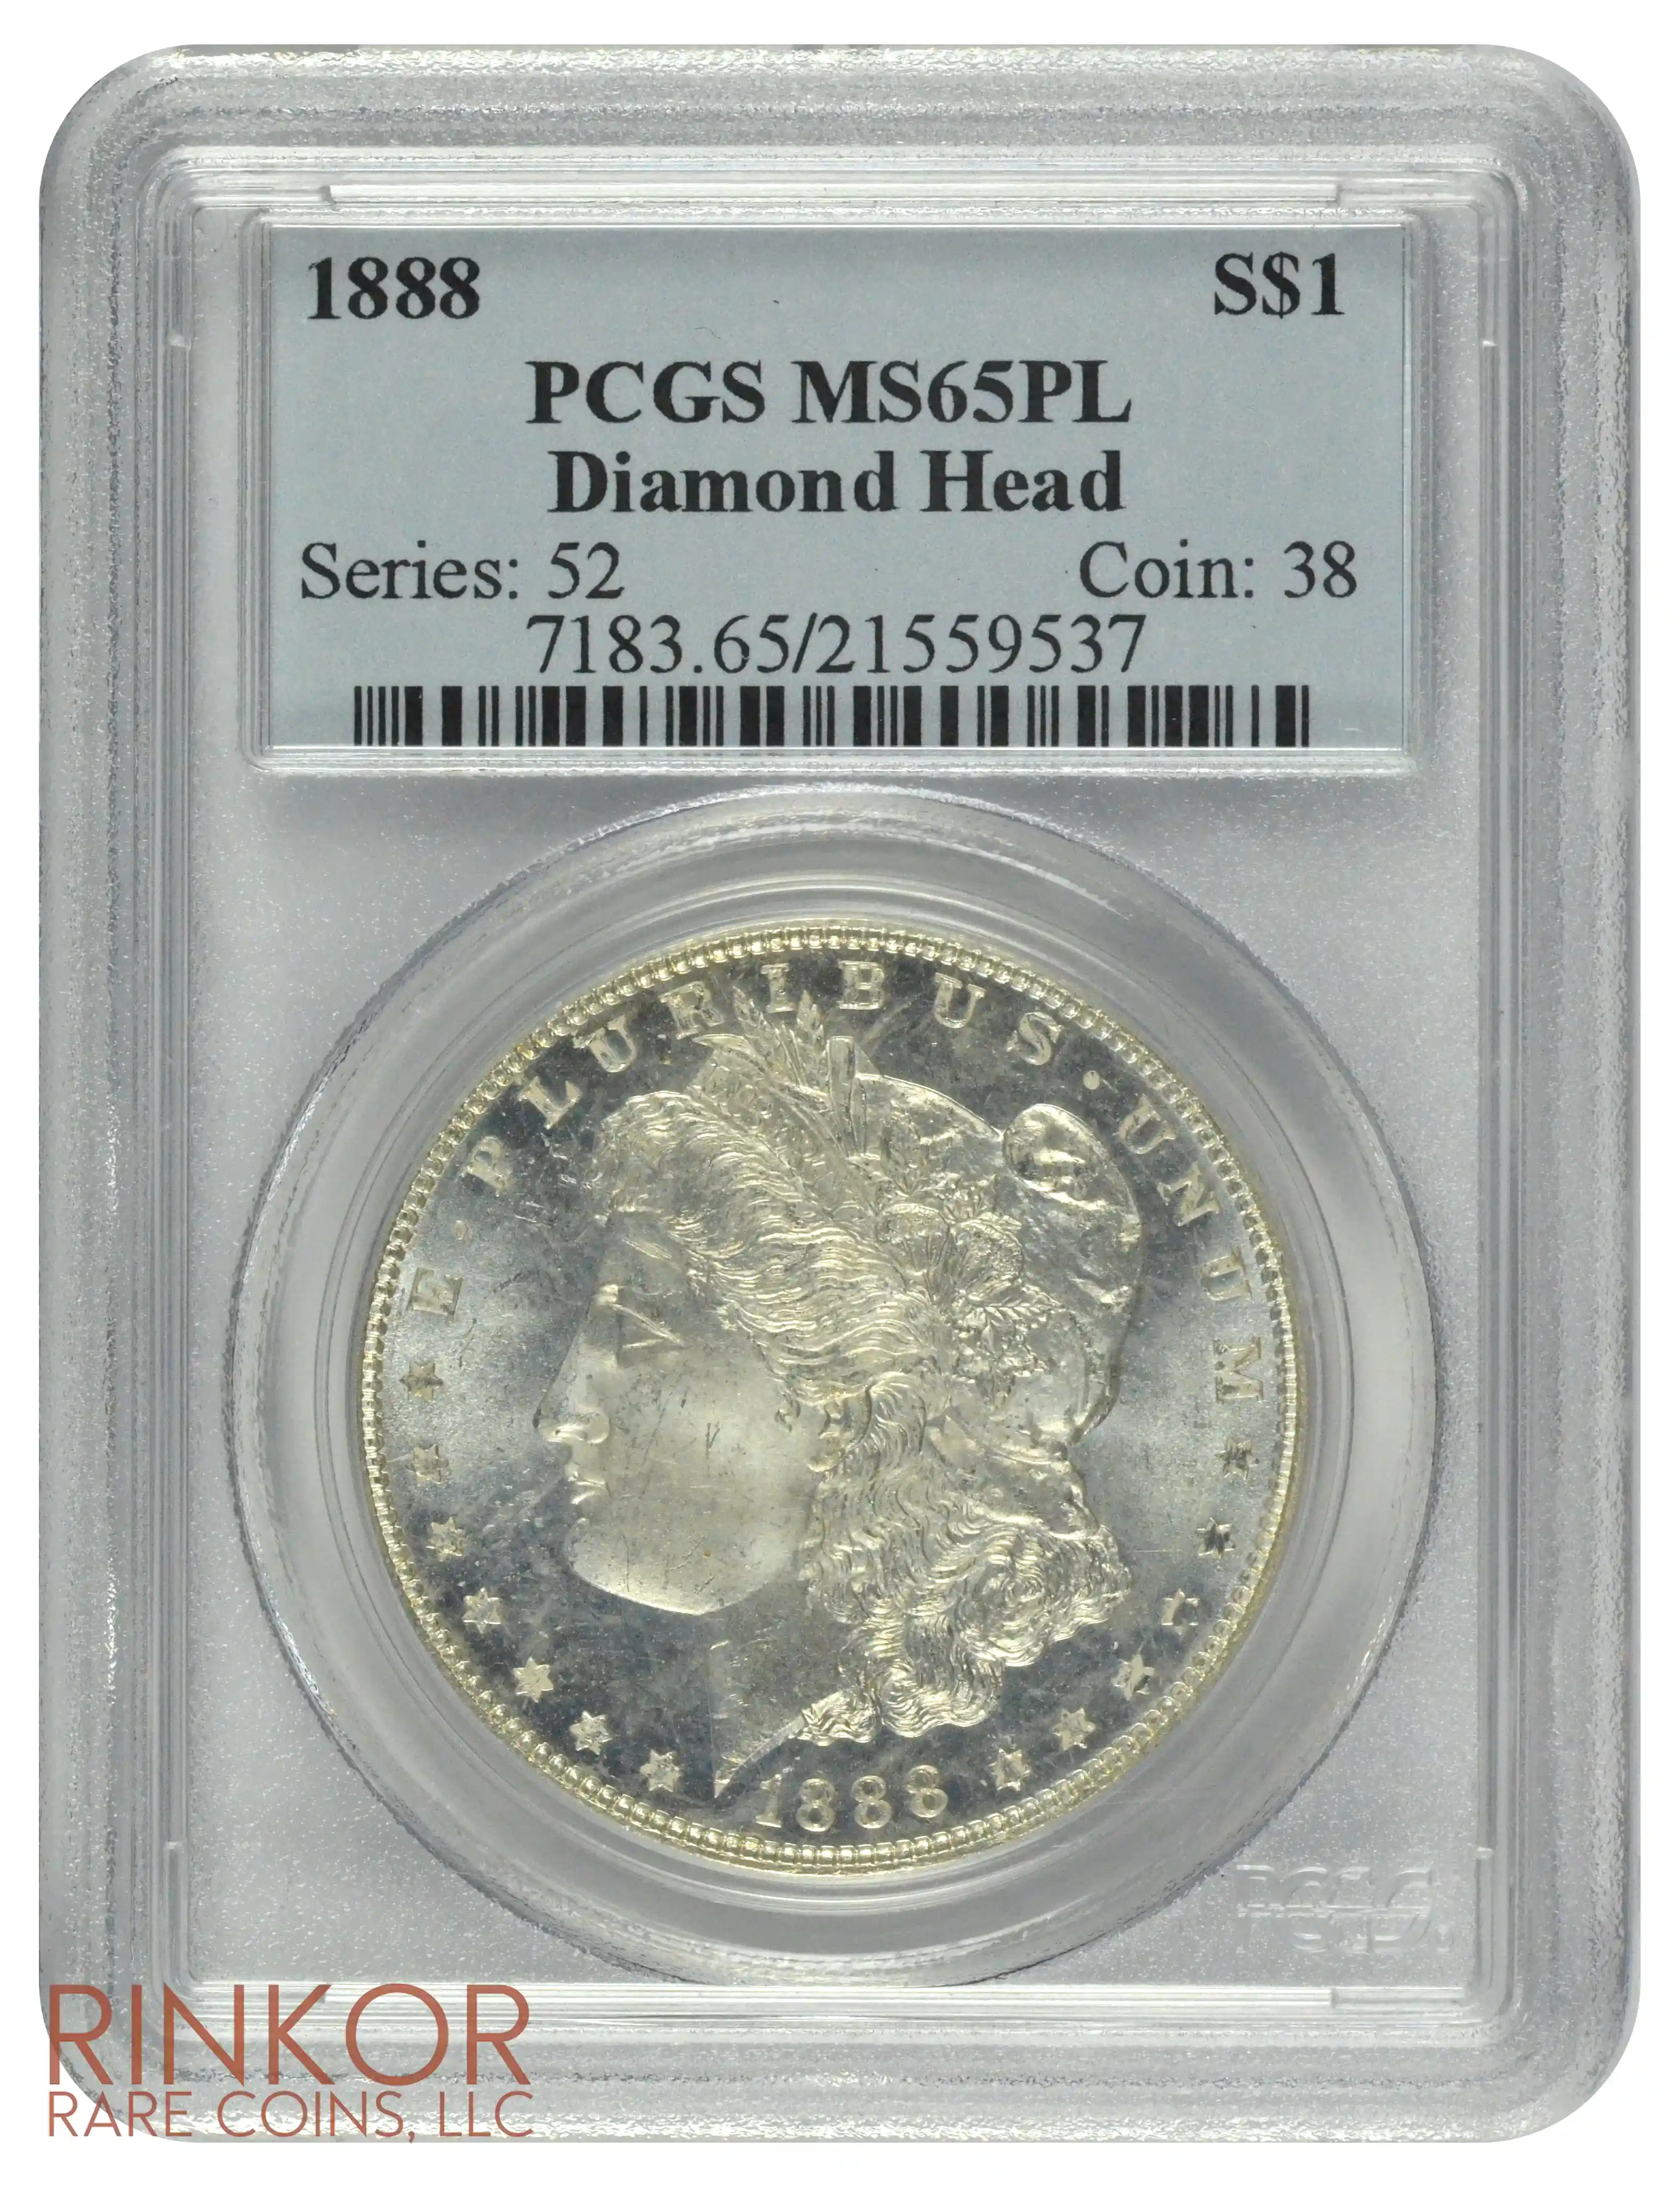 1888 $1 PCGS MS 65 PL